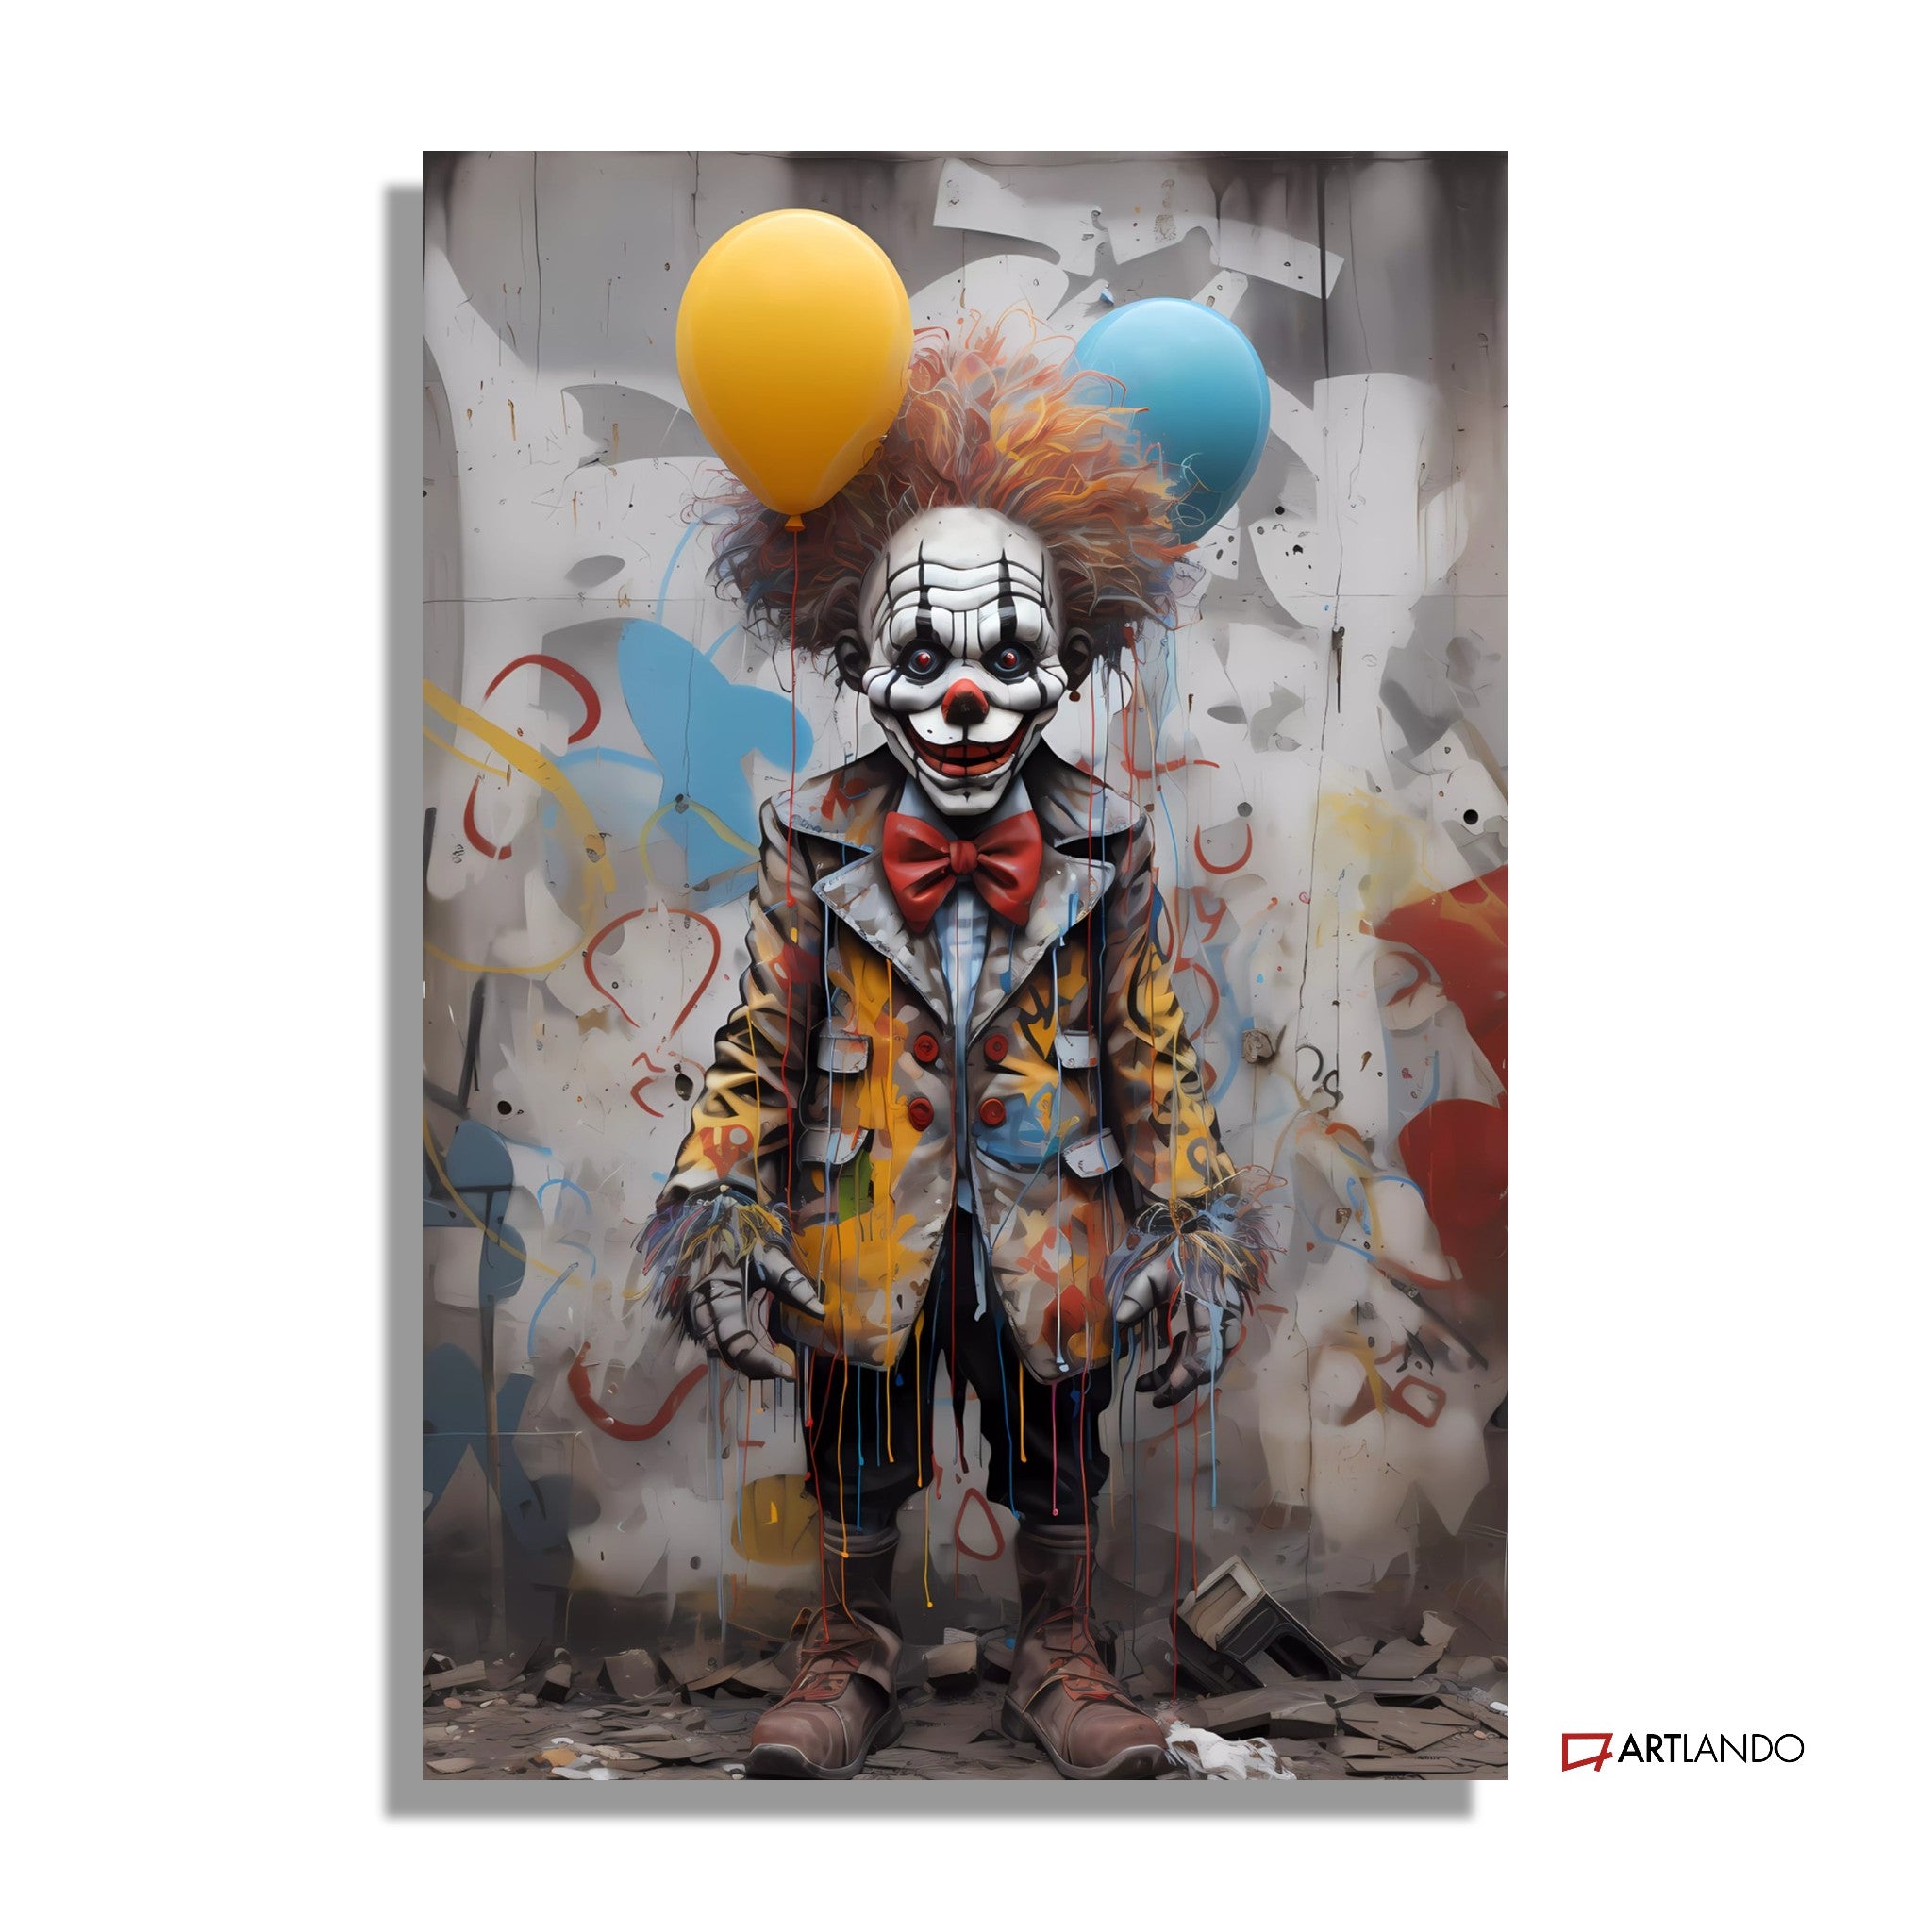 Clown mit Balloons in der Strasse vor einem Graffiti